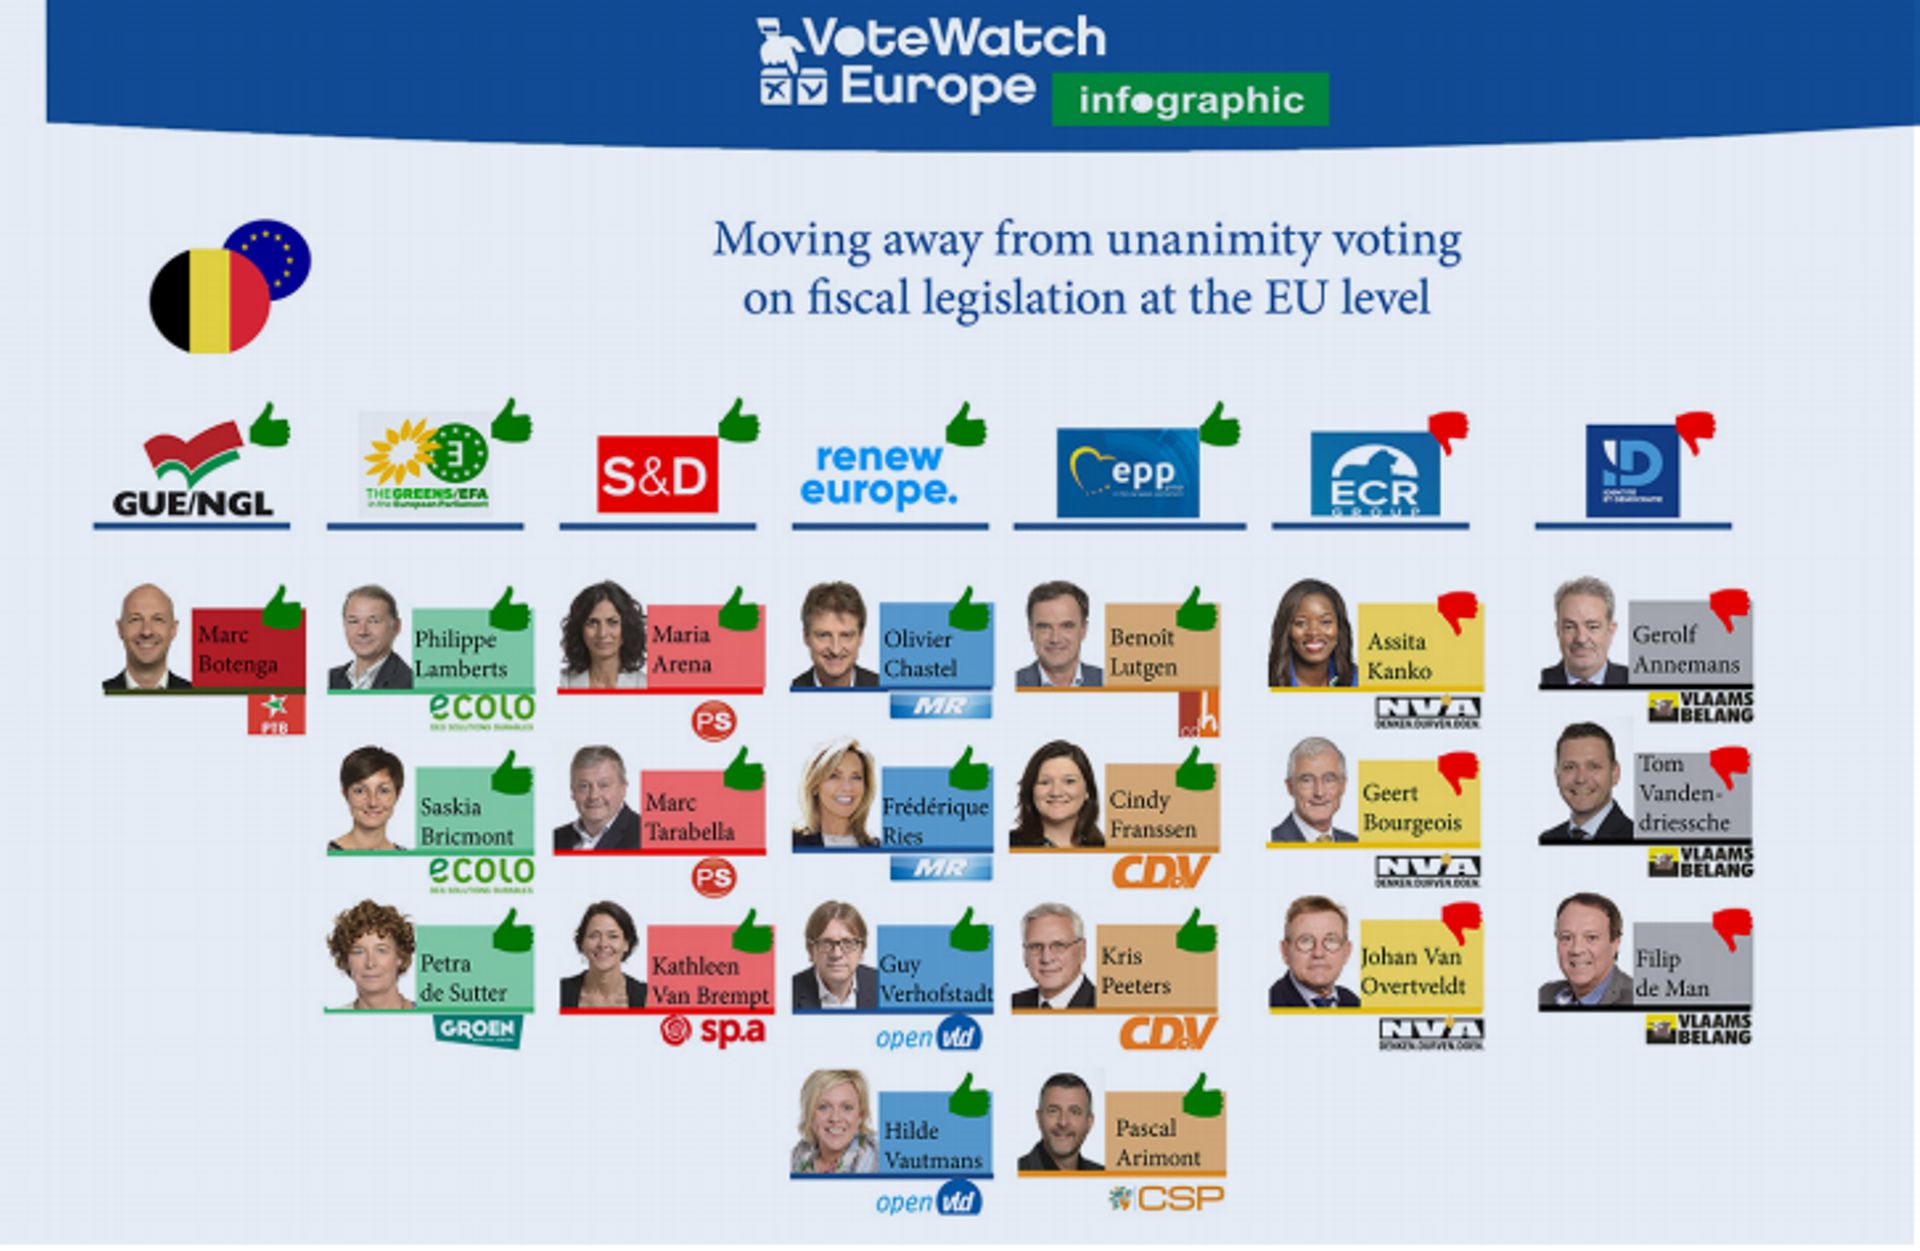 Capture d'écran du rapport de Votewatch Europe